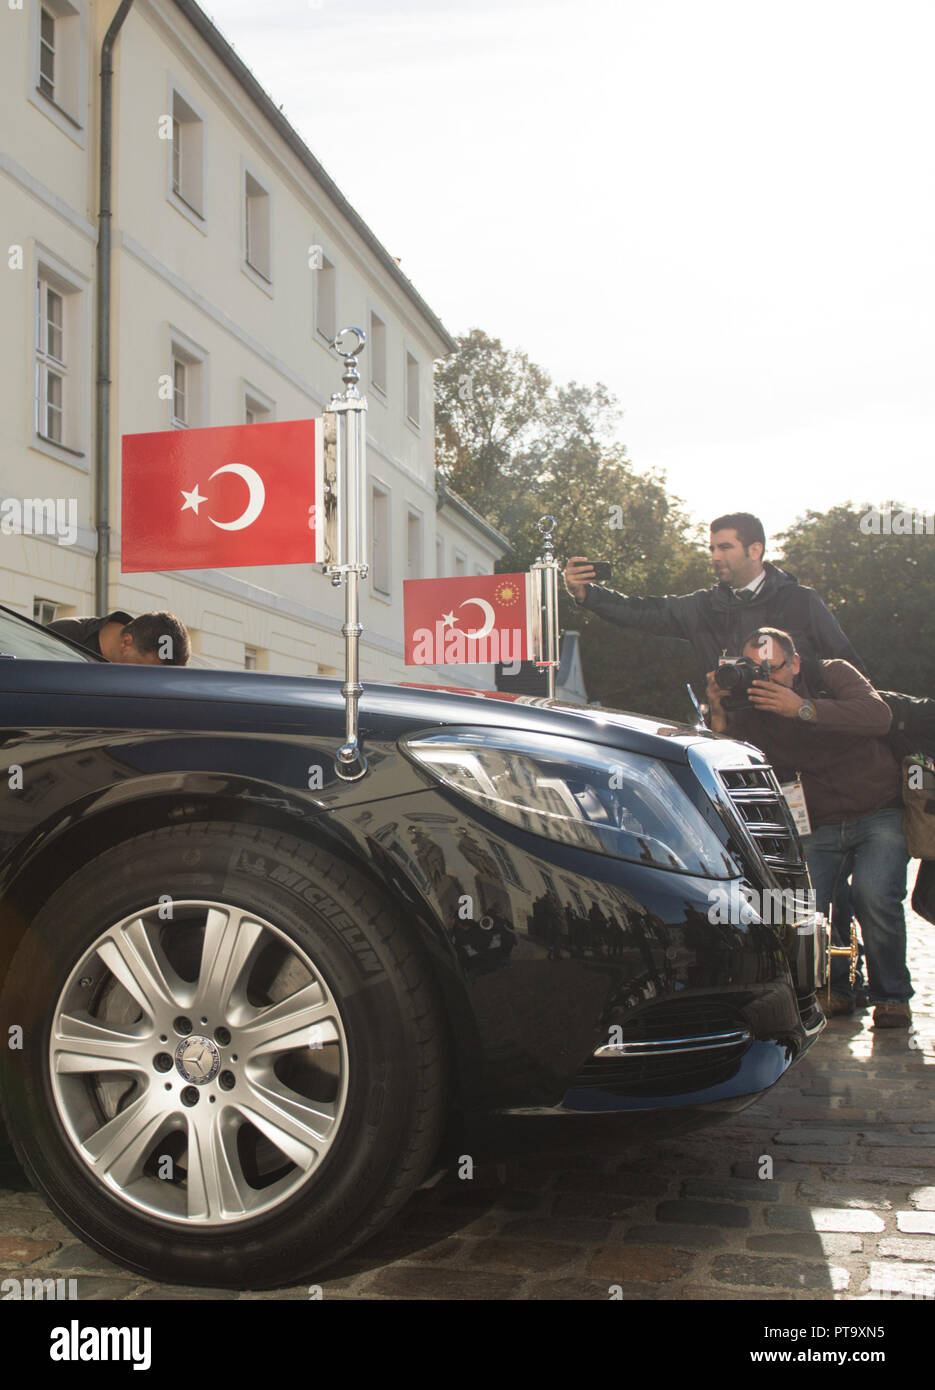 Fonction - la limousine du Président turc est stationné sur l'allée. Arrivée et accueil du Président turc, Recep Tayyip Erdogan avec les honneurs militaires par le Président fédéral au château de Bellevue à Berlin, Allemagne le 28.09.2018. ¬ | conditions dans le monde entier Banque D'Images